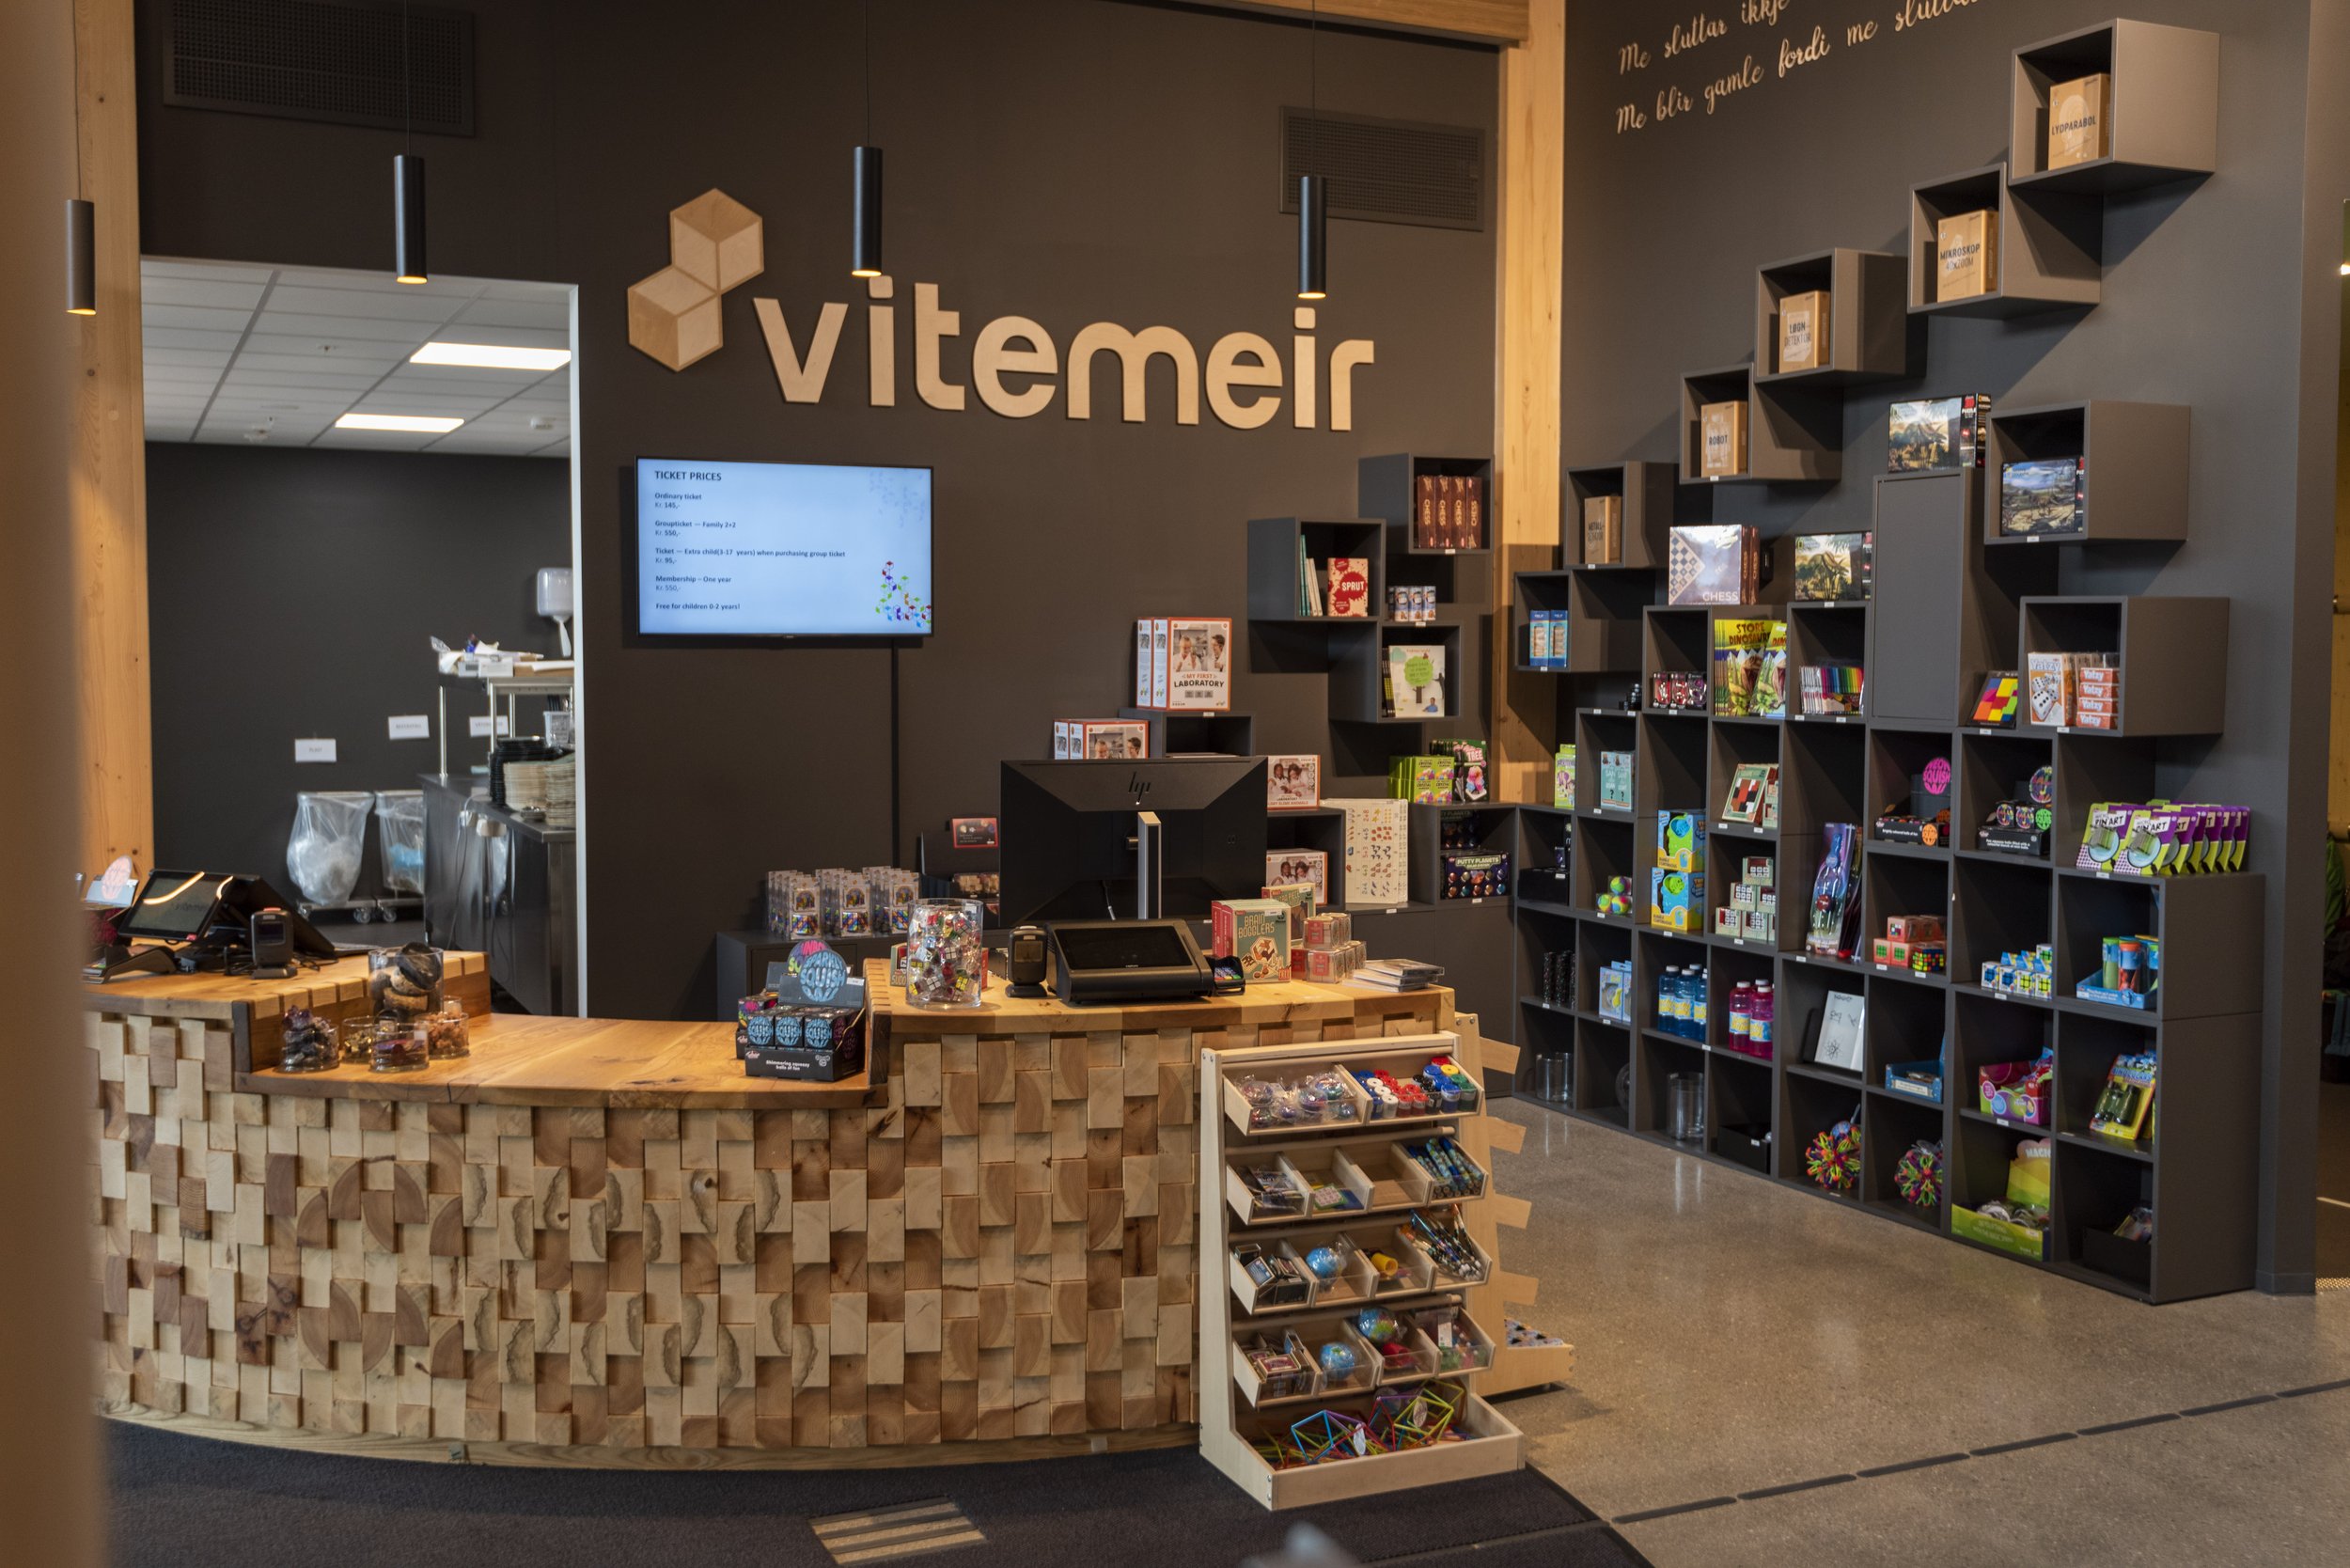 The ViteMeir shop